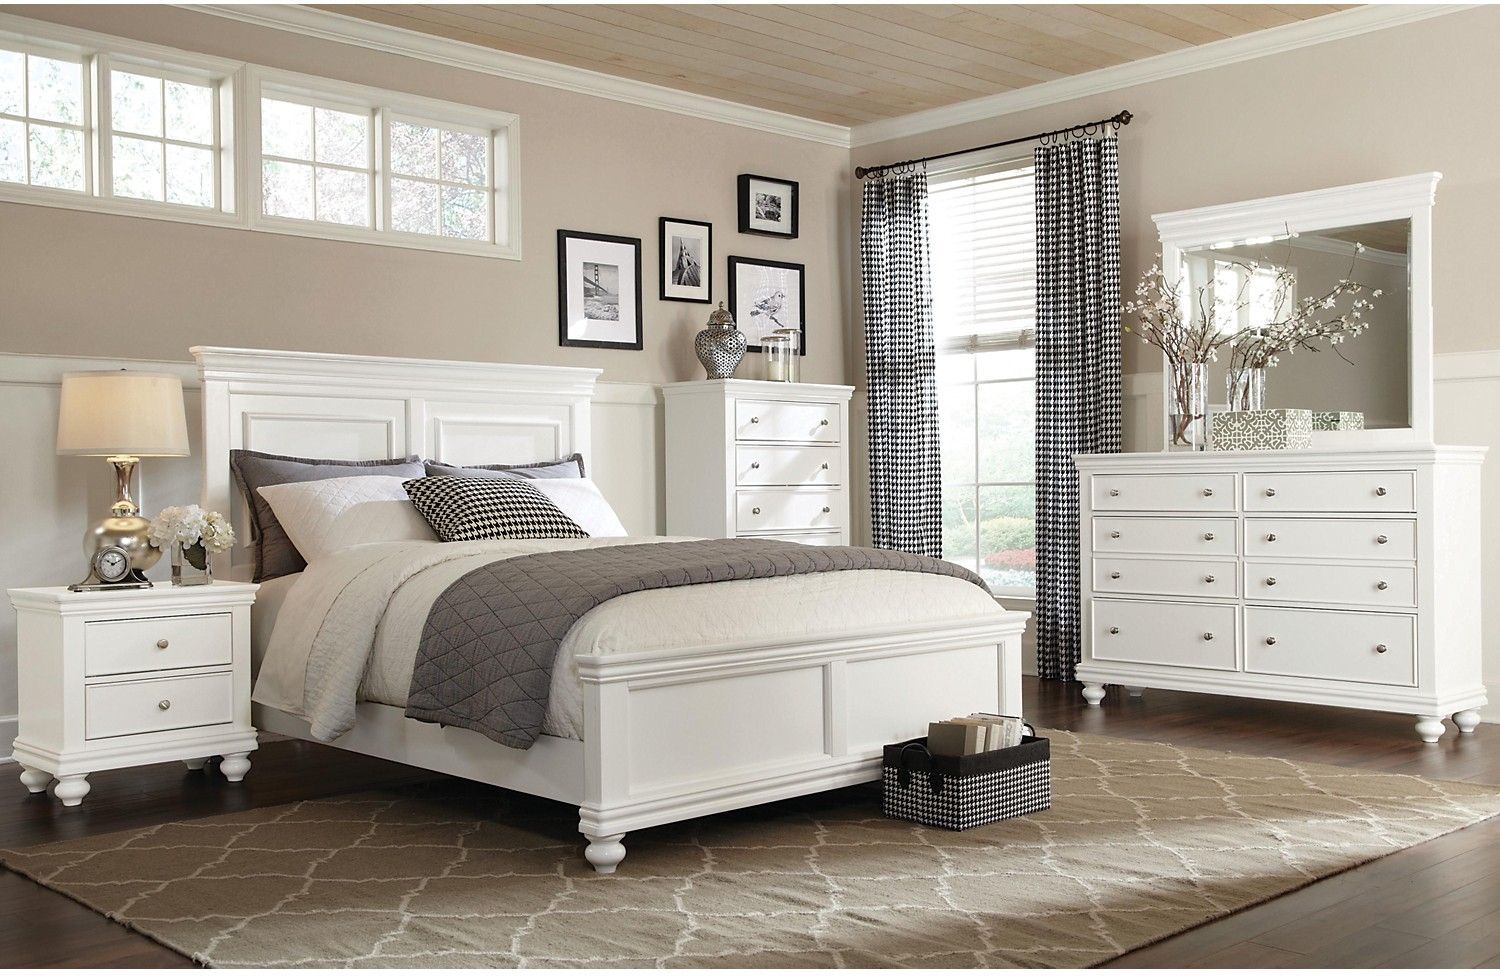 Bridgeport 6 Piece Queen Bedroom Set White In 2019 2442 Bristol intended for measurements 1500 X 976